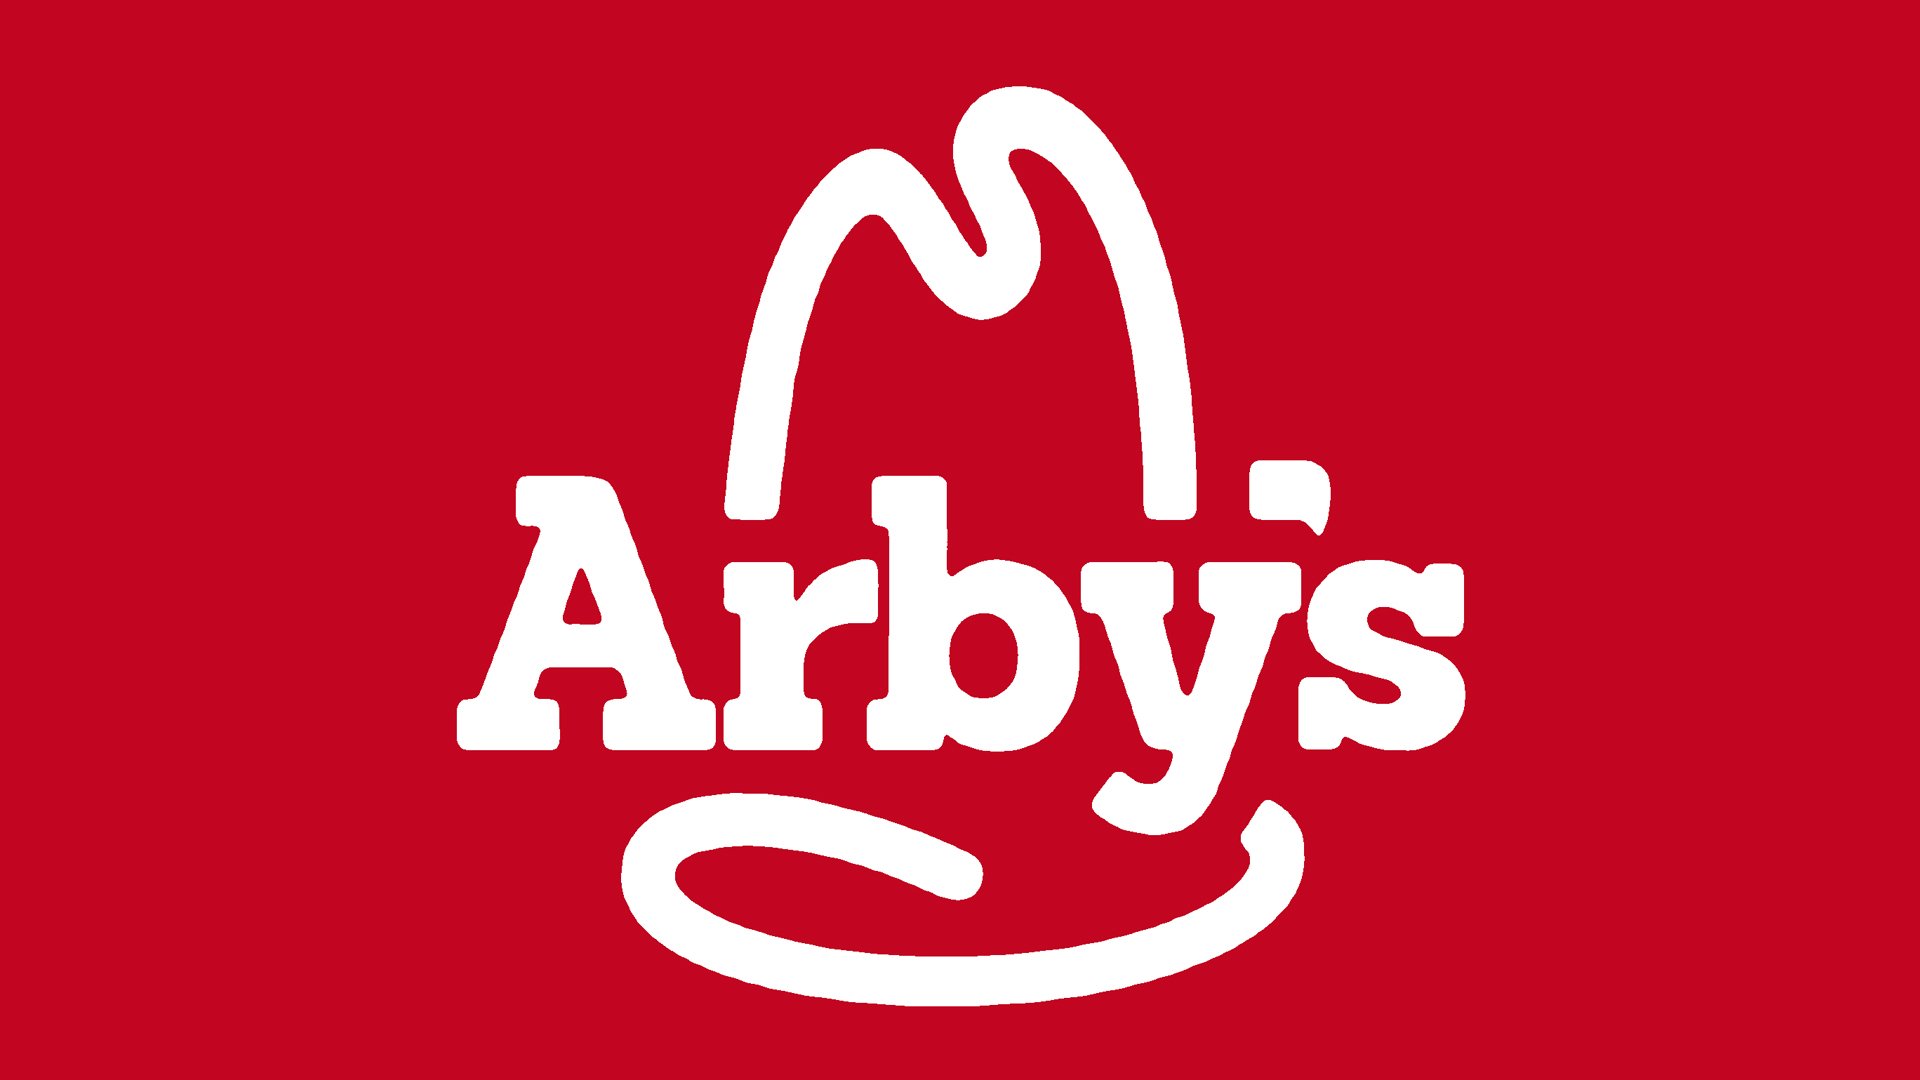 Arbys's